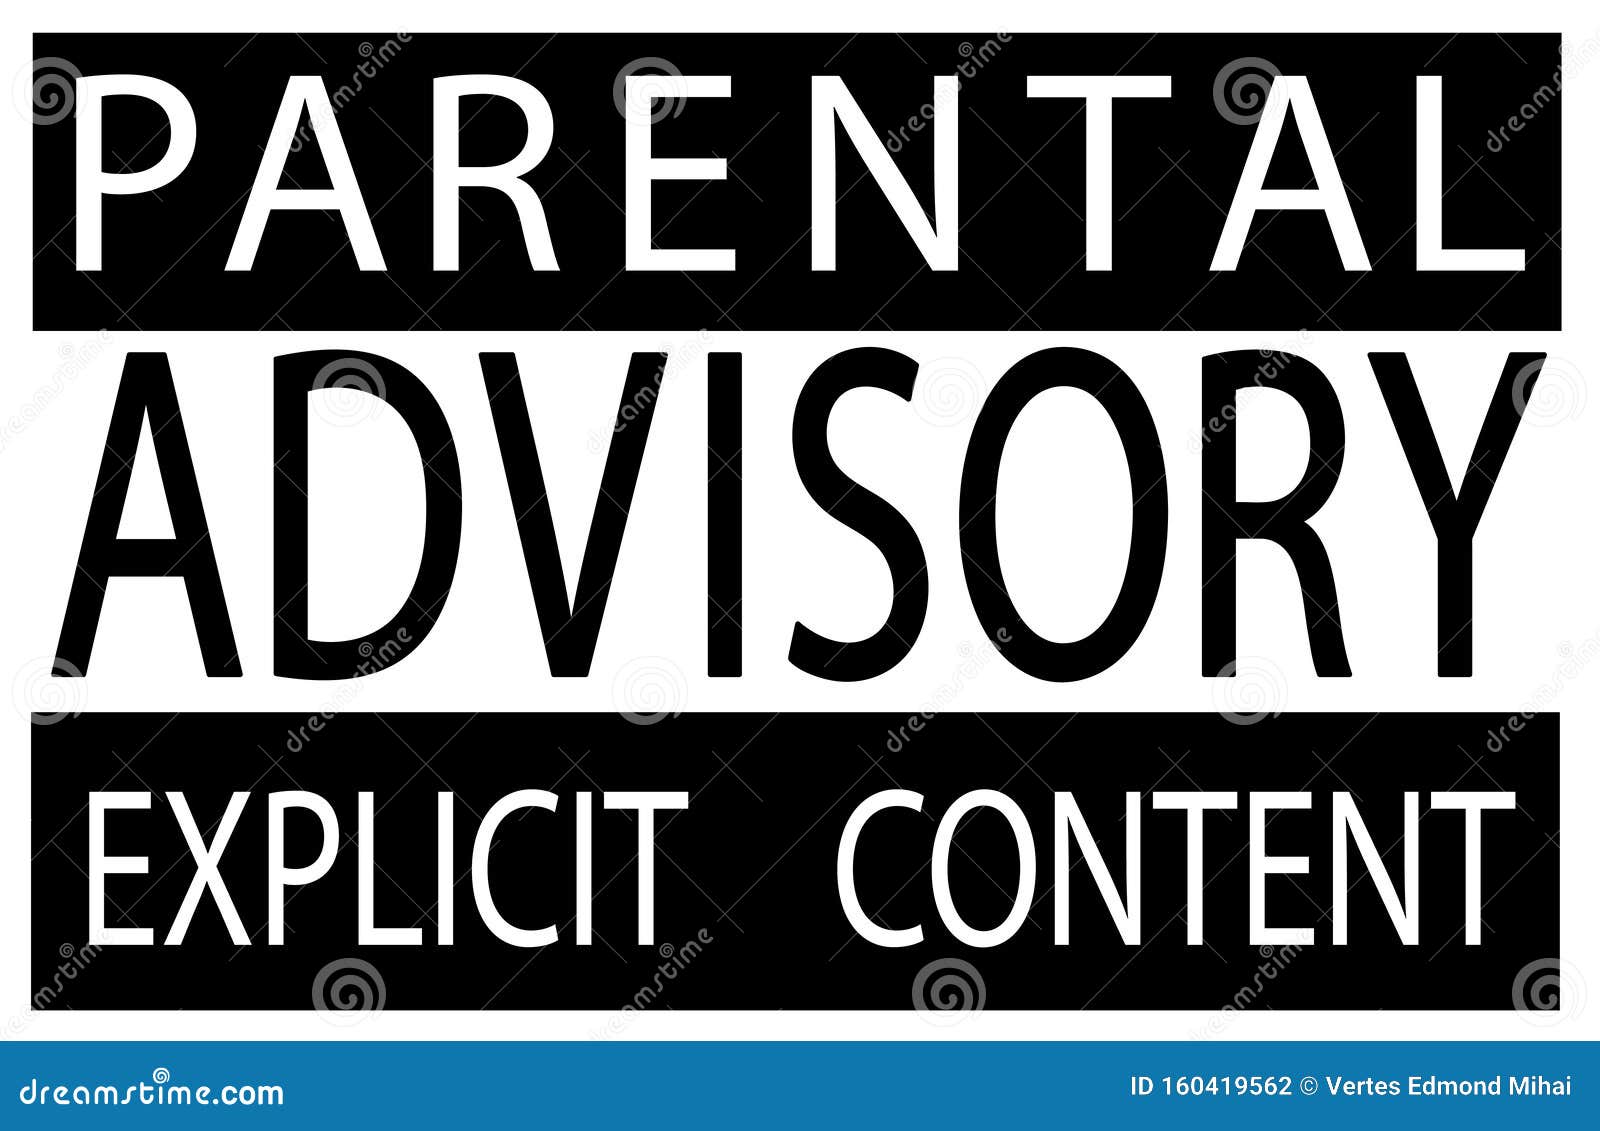 parental advisory explÃÂ±cÃÂ±t content